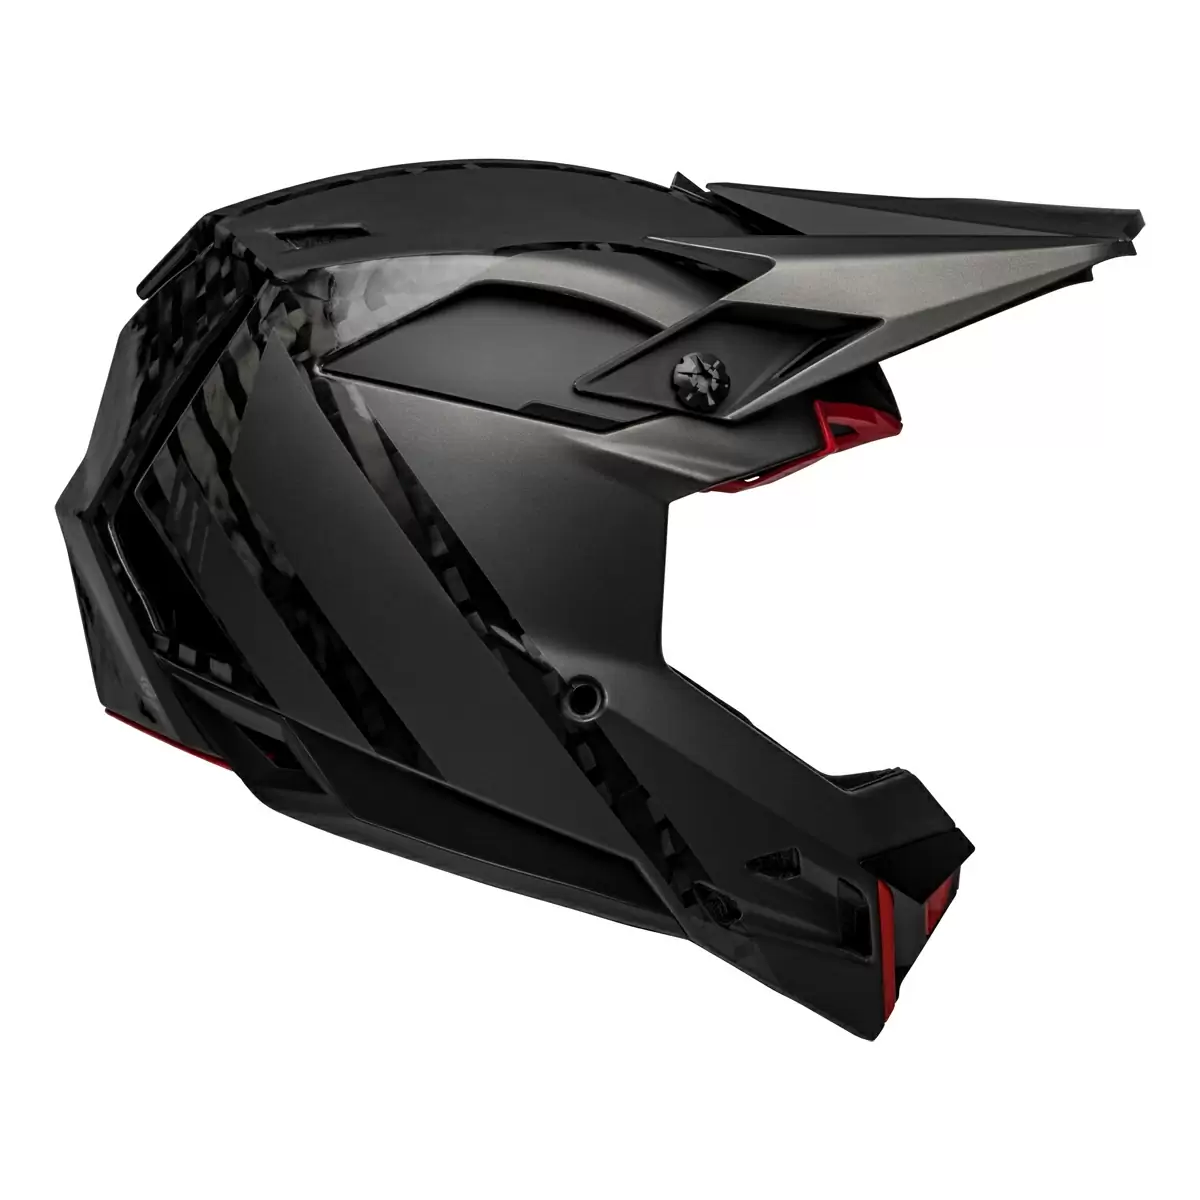 Full-10 Spherical Arise Matte / Gloss Black Carbon Full Face Helmet Size M (55-57cm) #1